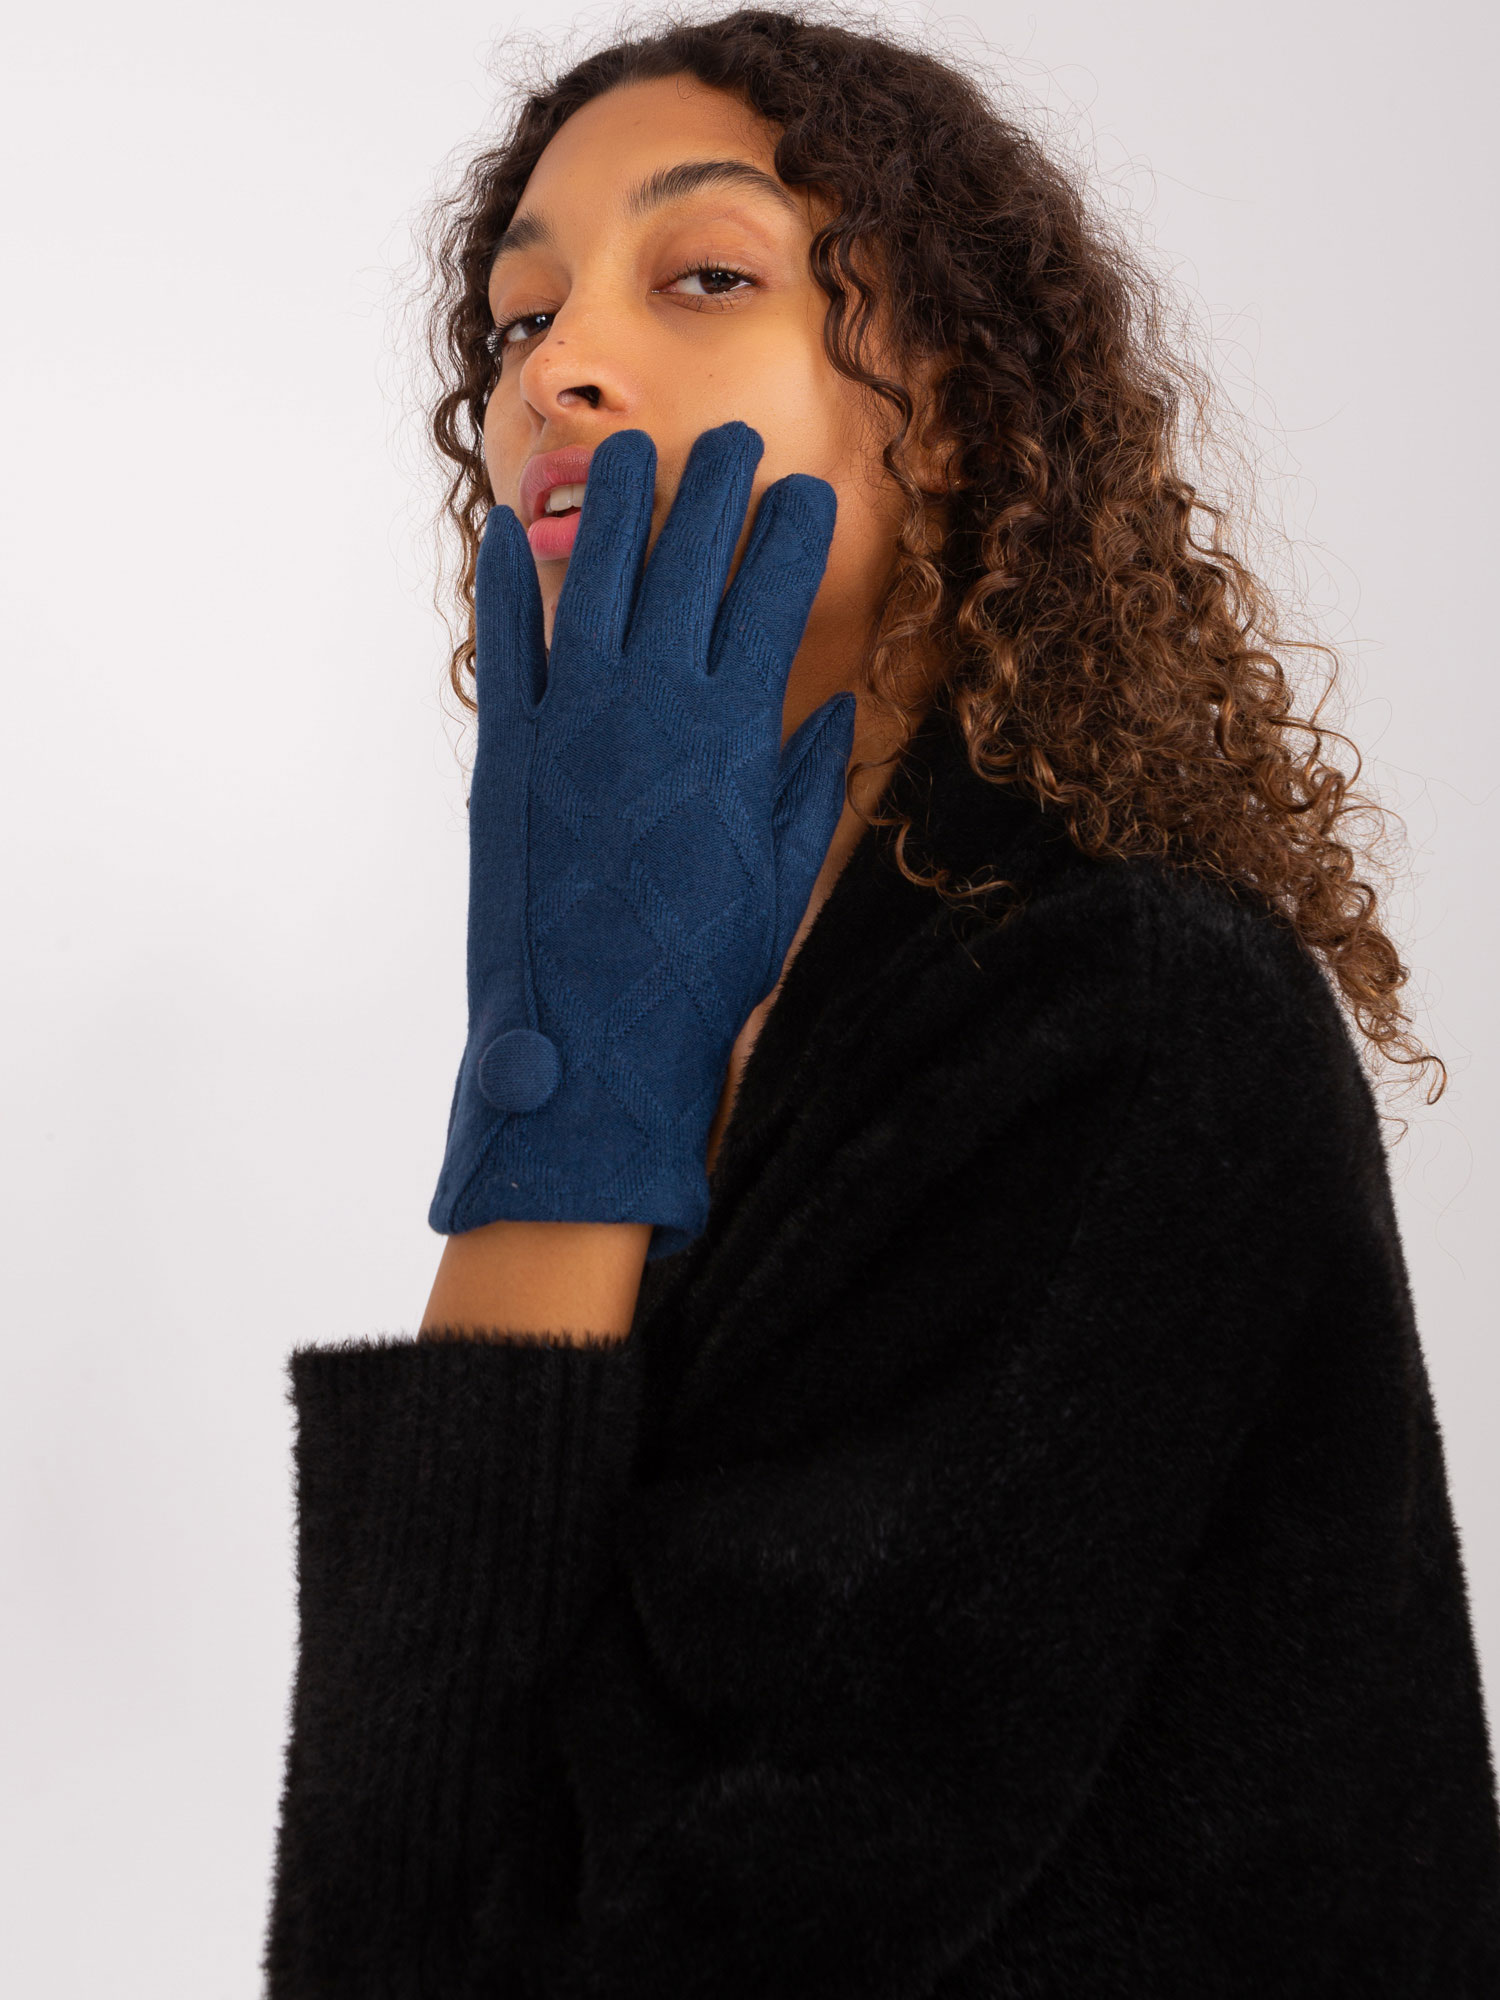 Tmavě modré rukavice s ozdobným knoflíkem -AT-RK-239501.10-sea blue Velikost: L/XL